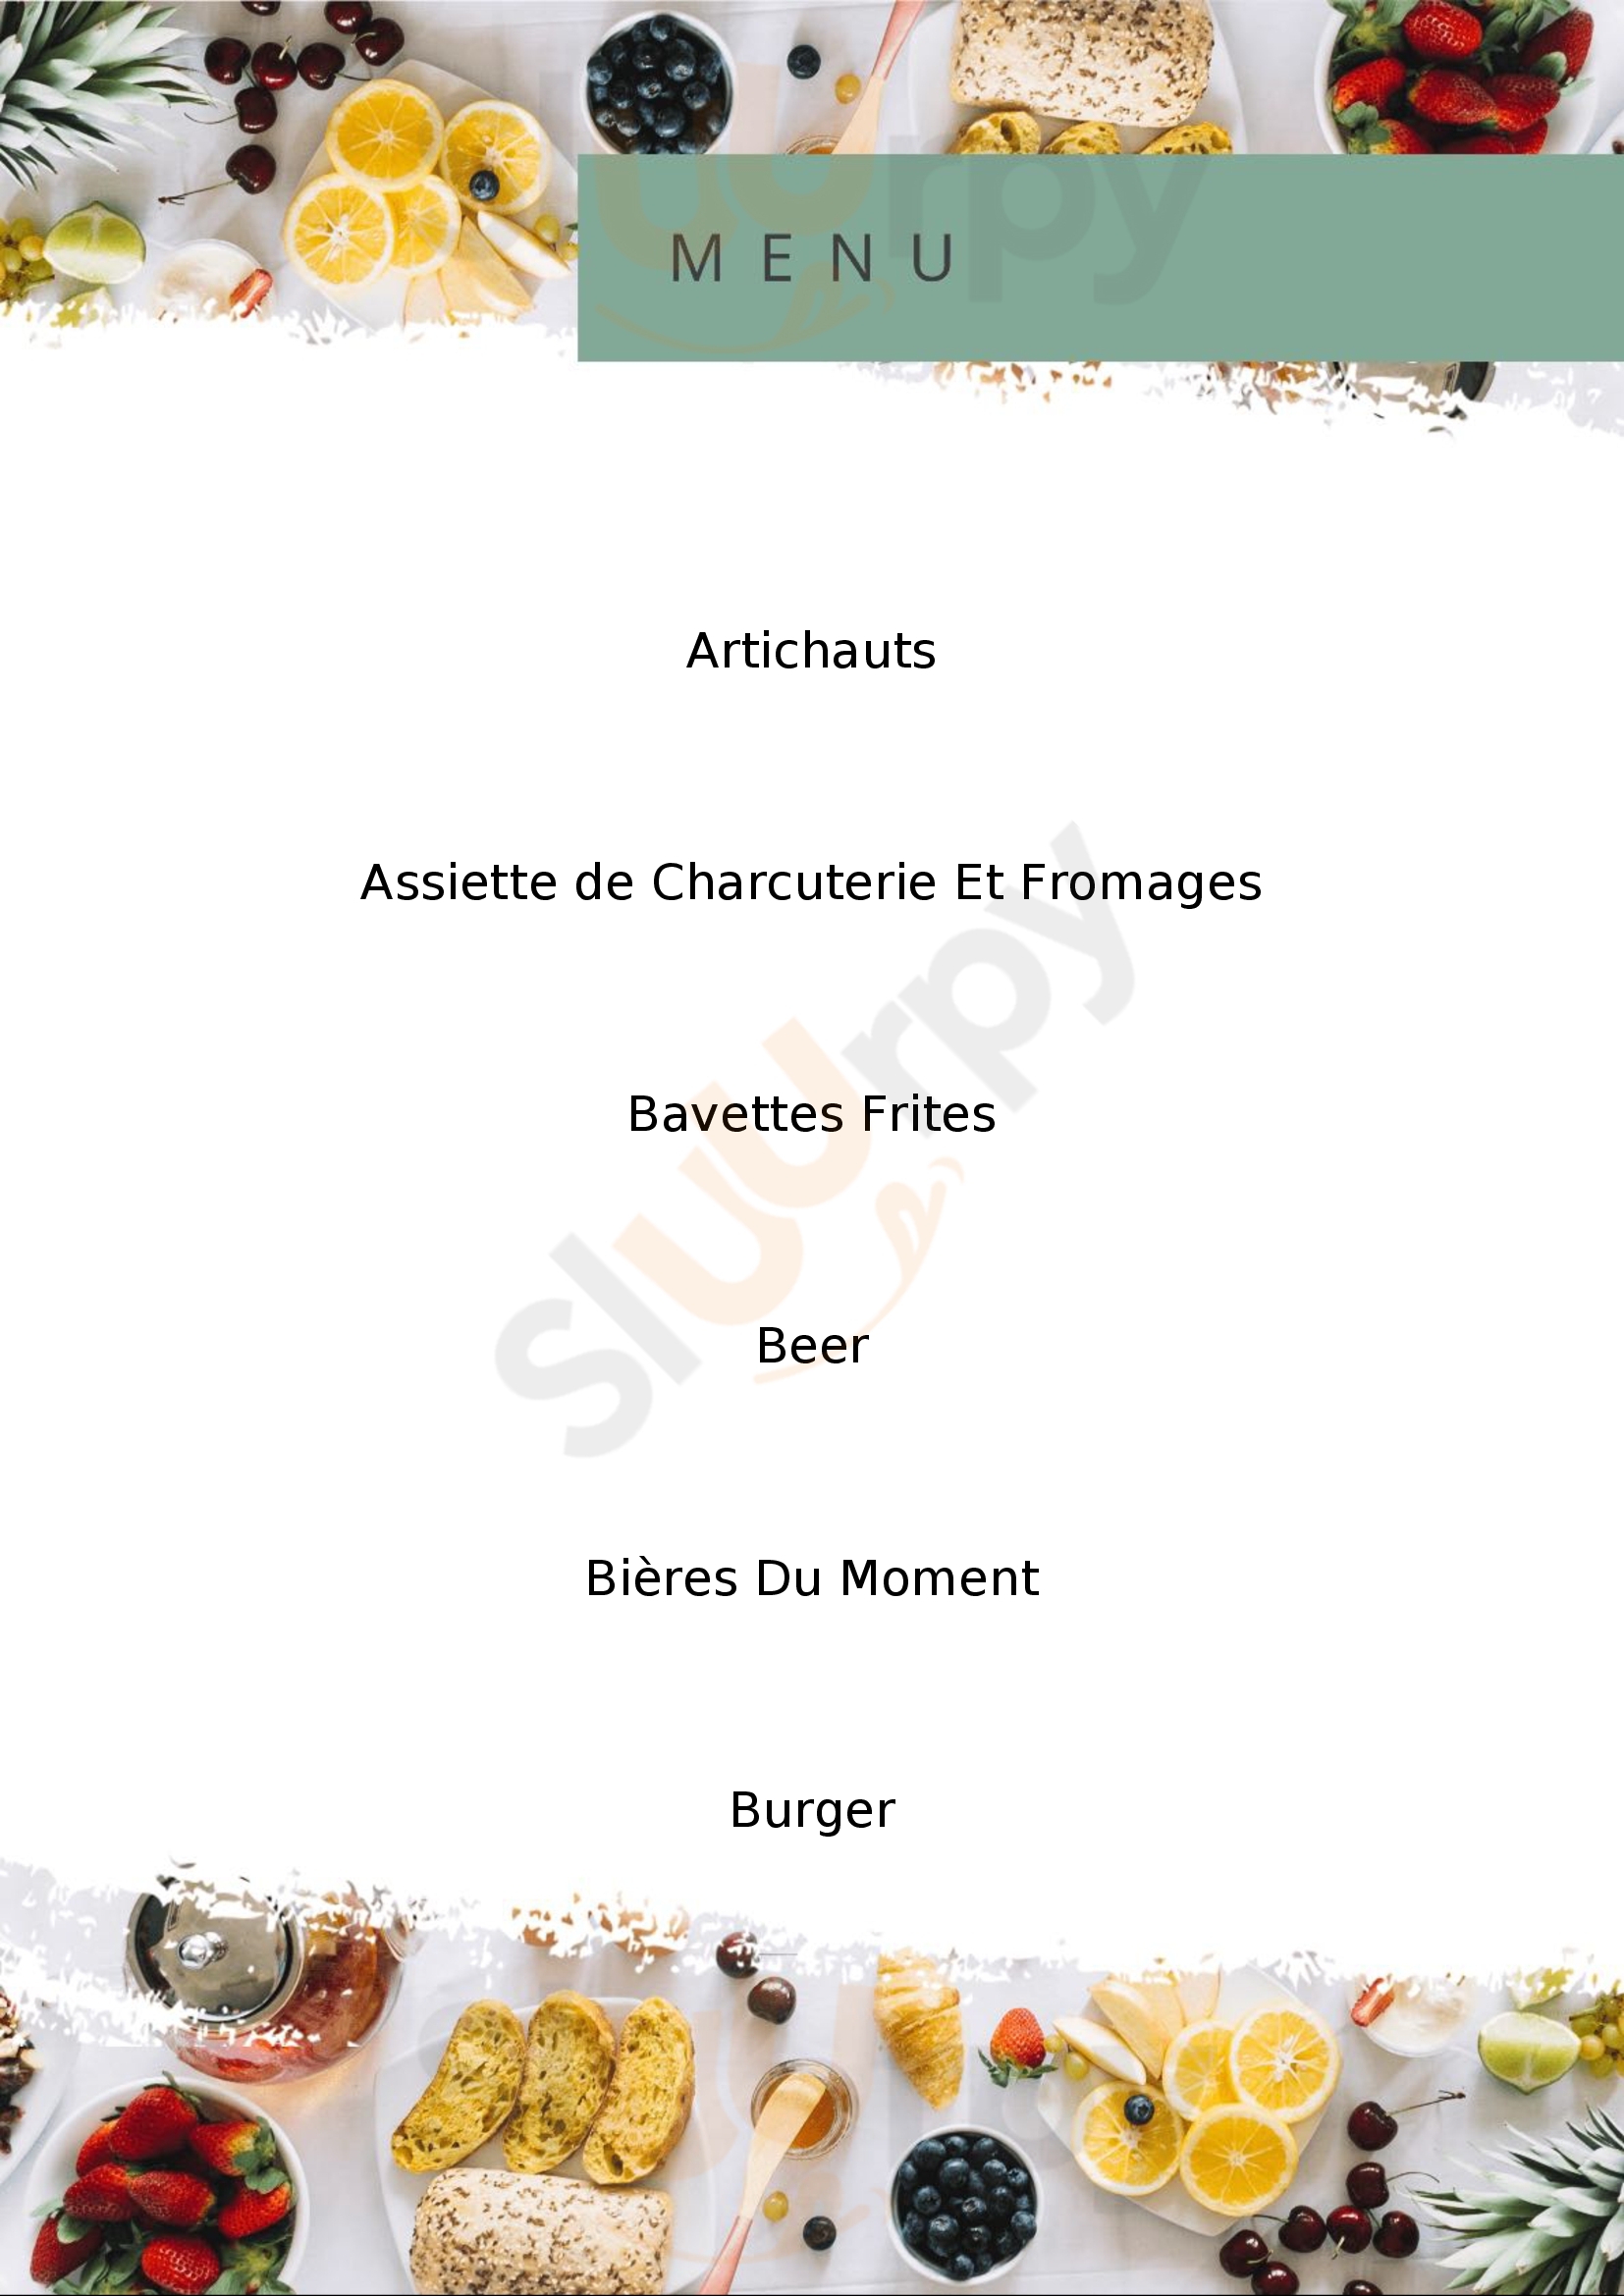 Bistrot Pub Food & Brew - Le Fab - Blois Blois Menu - 1